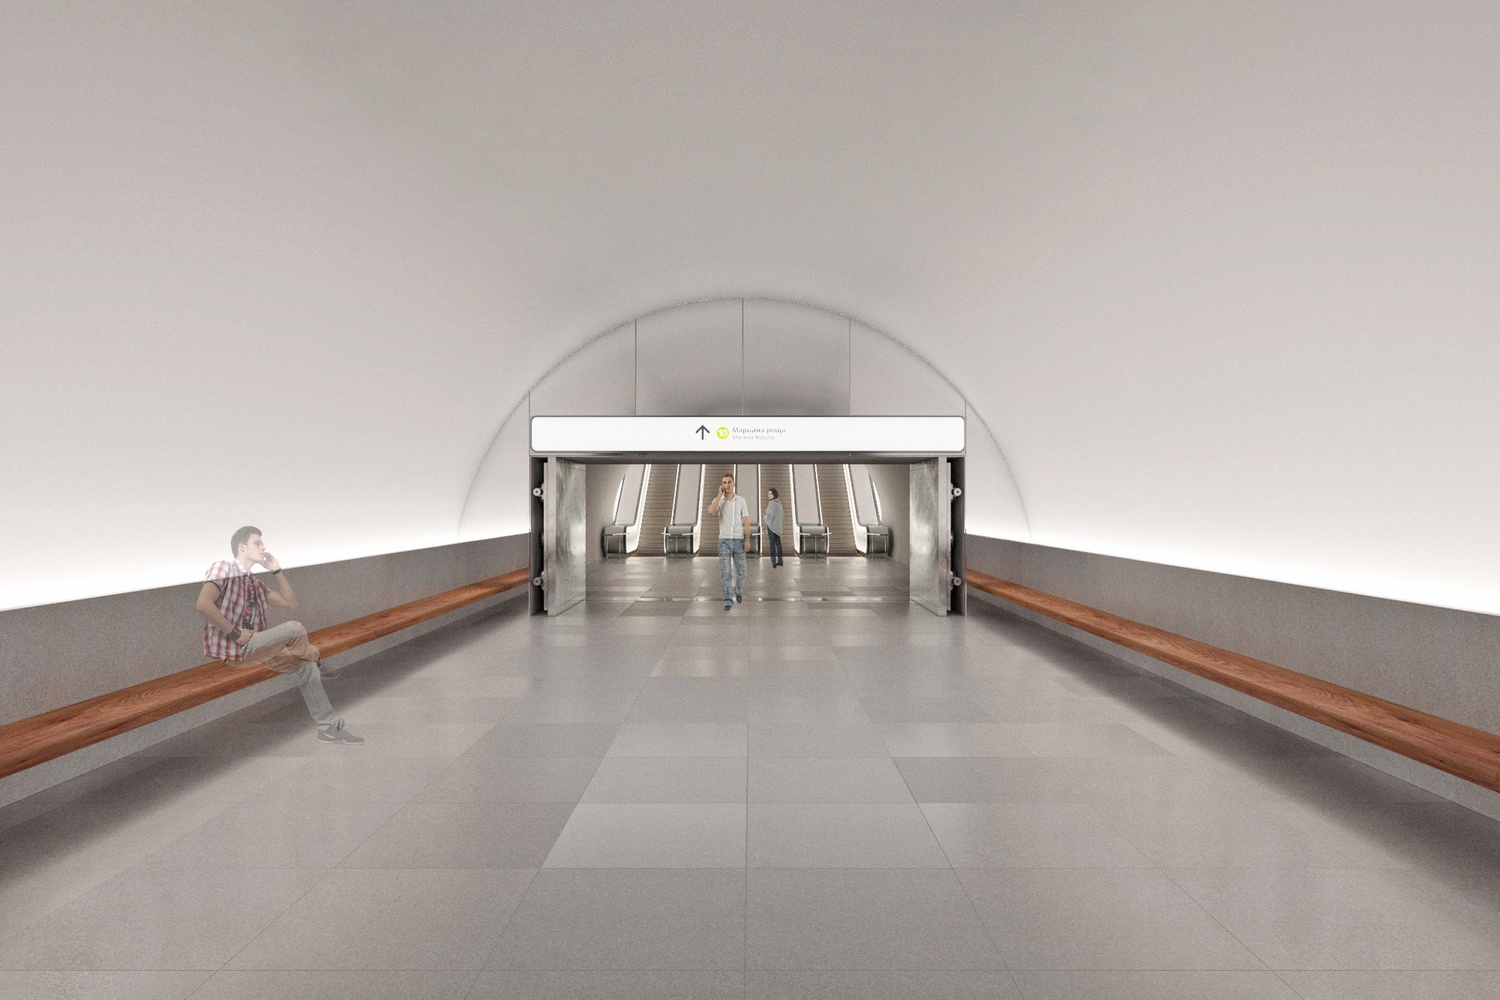 莫斯科地铁车站-画廊-模匠网,3d模型下载,免费模型